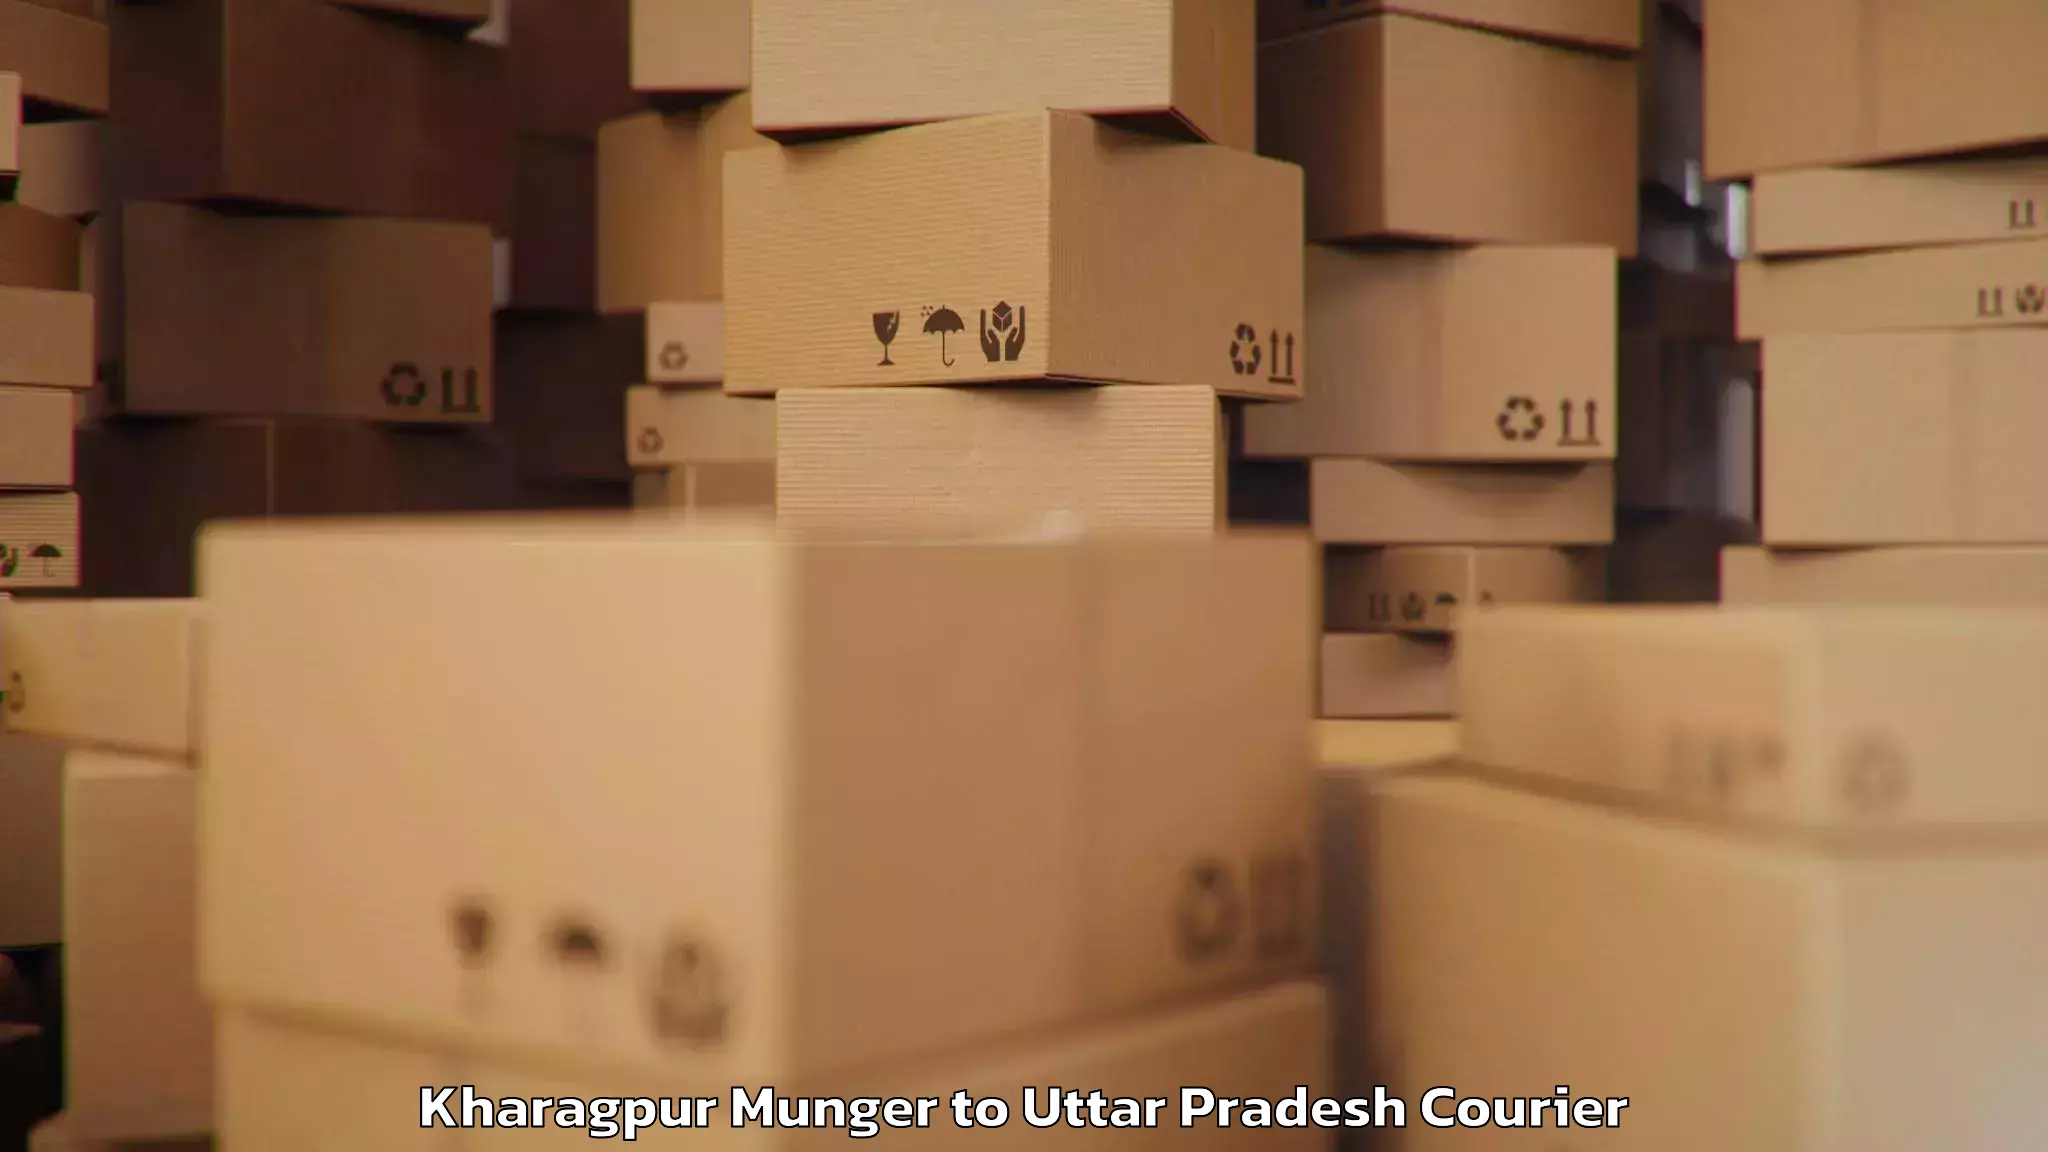 Baggage transport scheduler Kharagpur Munger to Uttar Pradesh